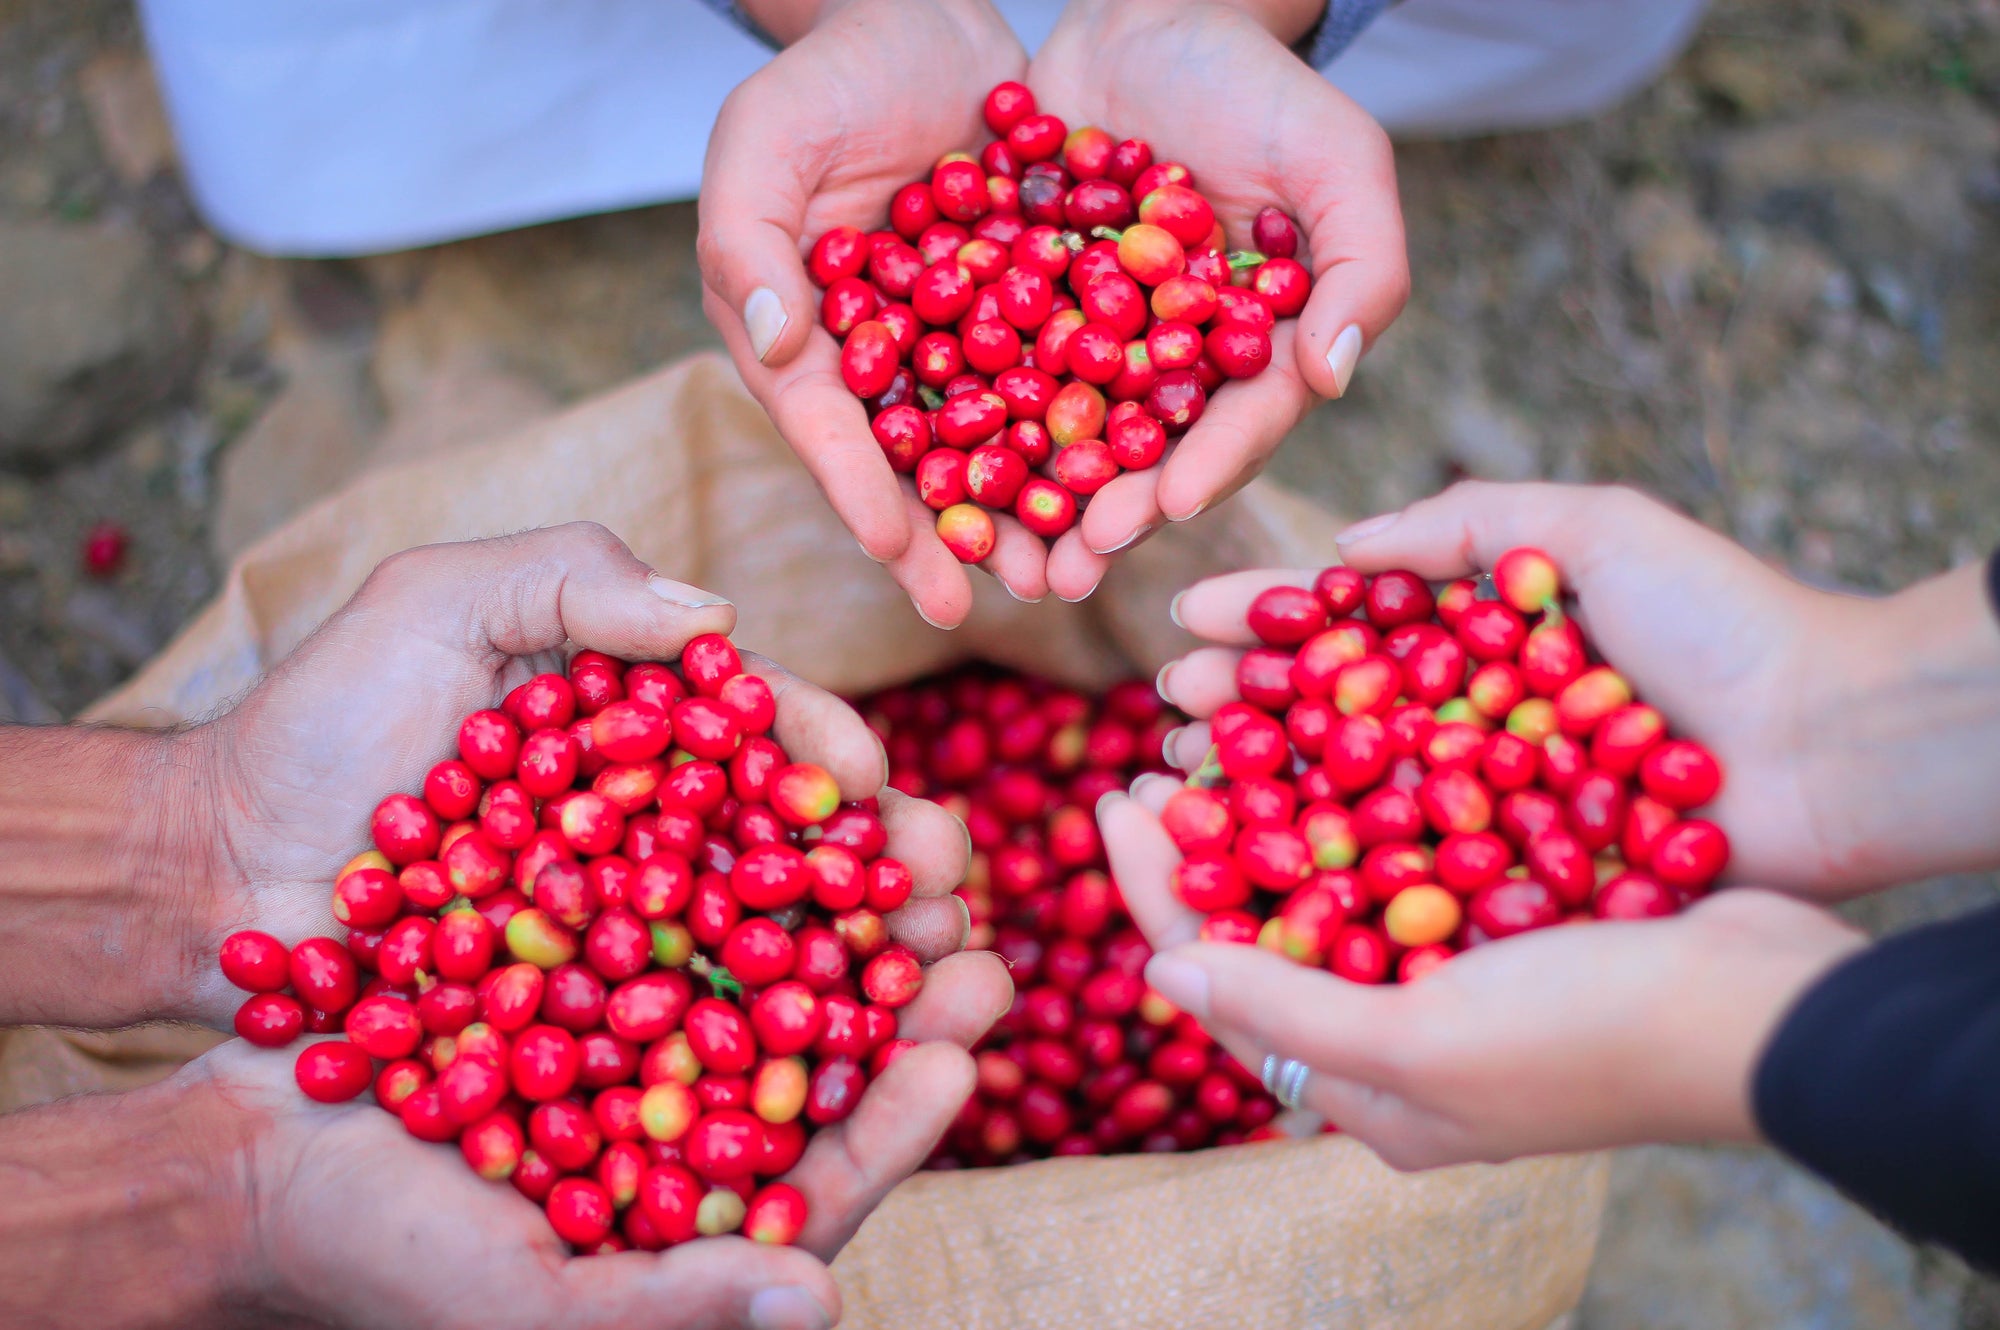 Freshly harvested coffee cherries from Yemen